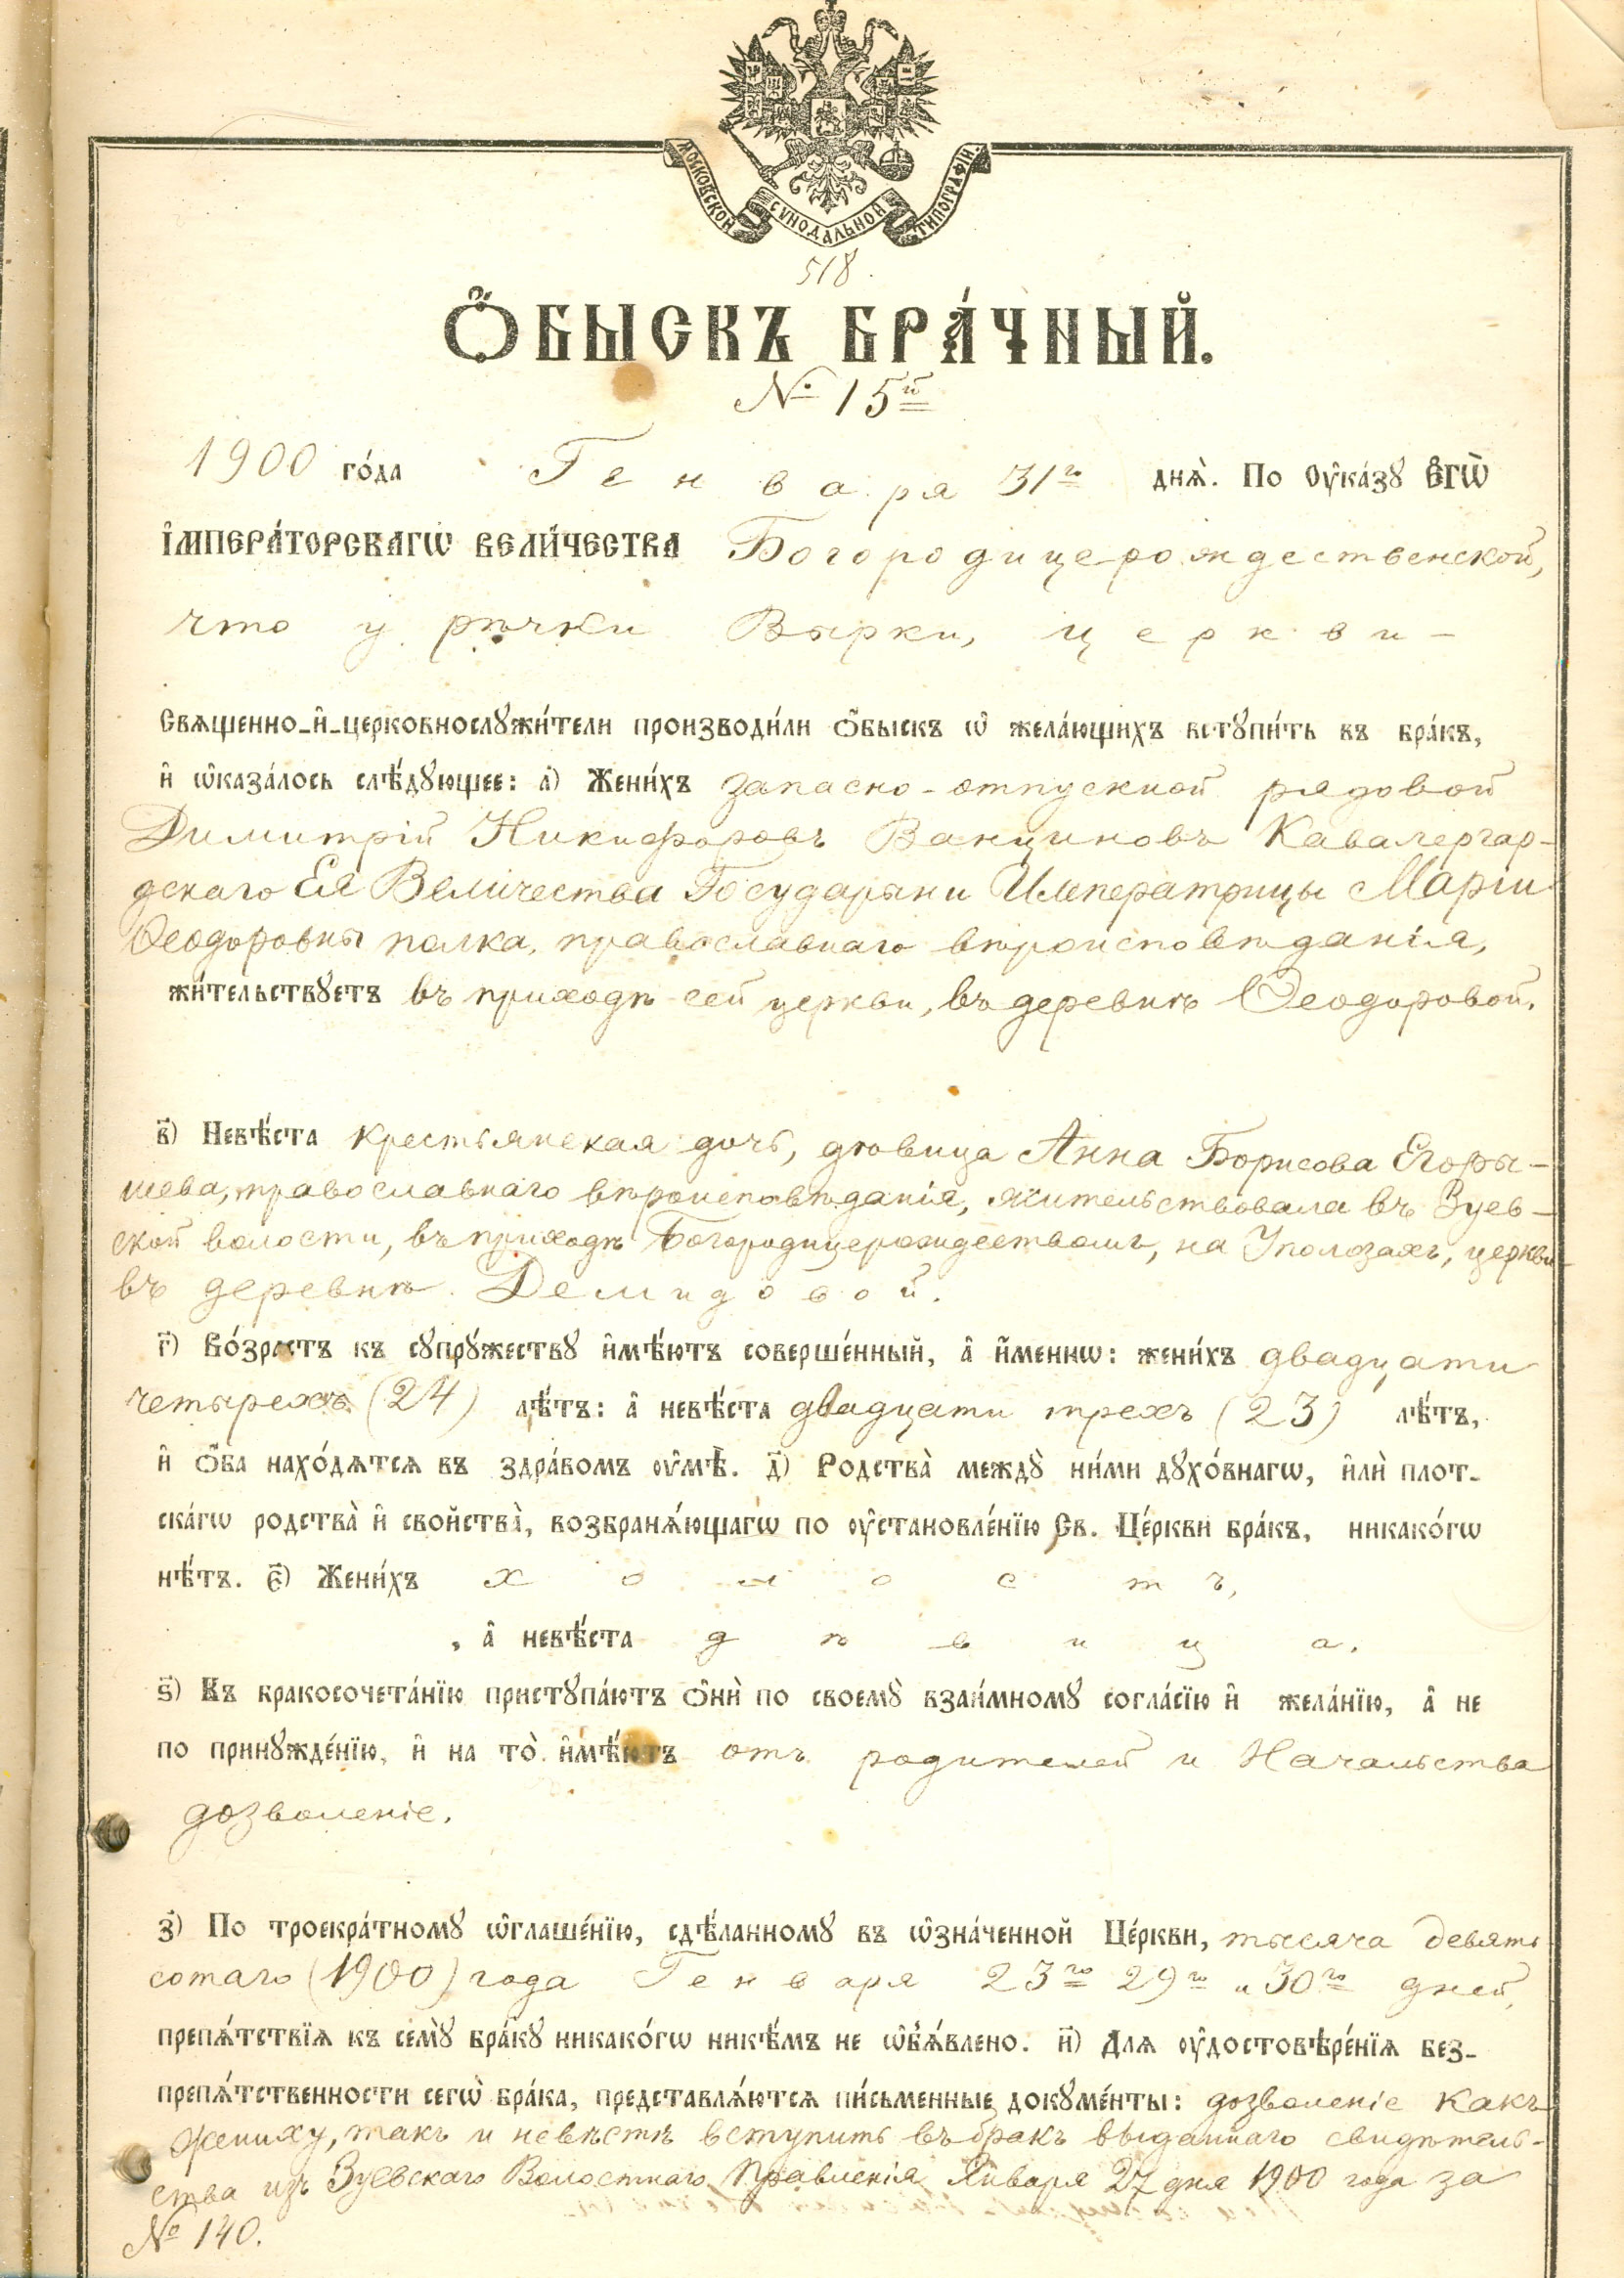 Брачный обыск кавалергарда императрицы Марии Фелдоровны Д.Н.Ванцинова (1900 г., приходской архив)